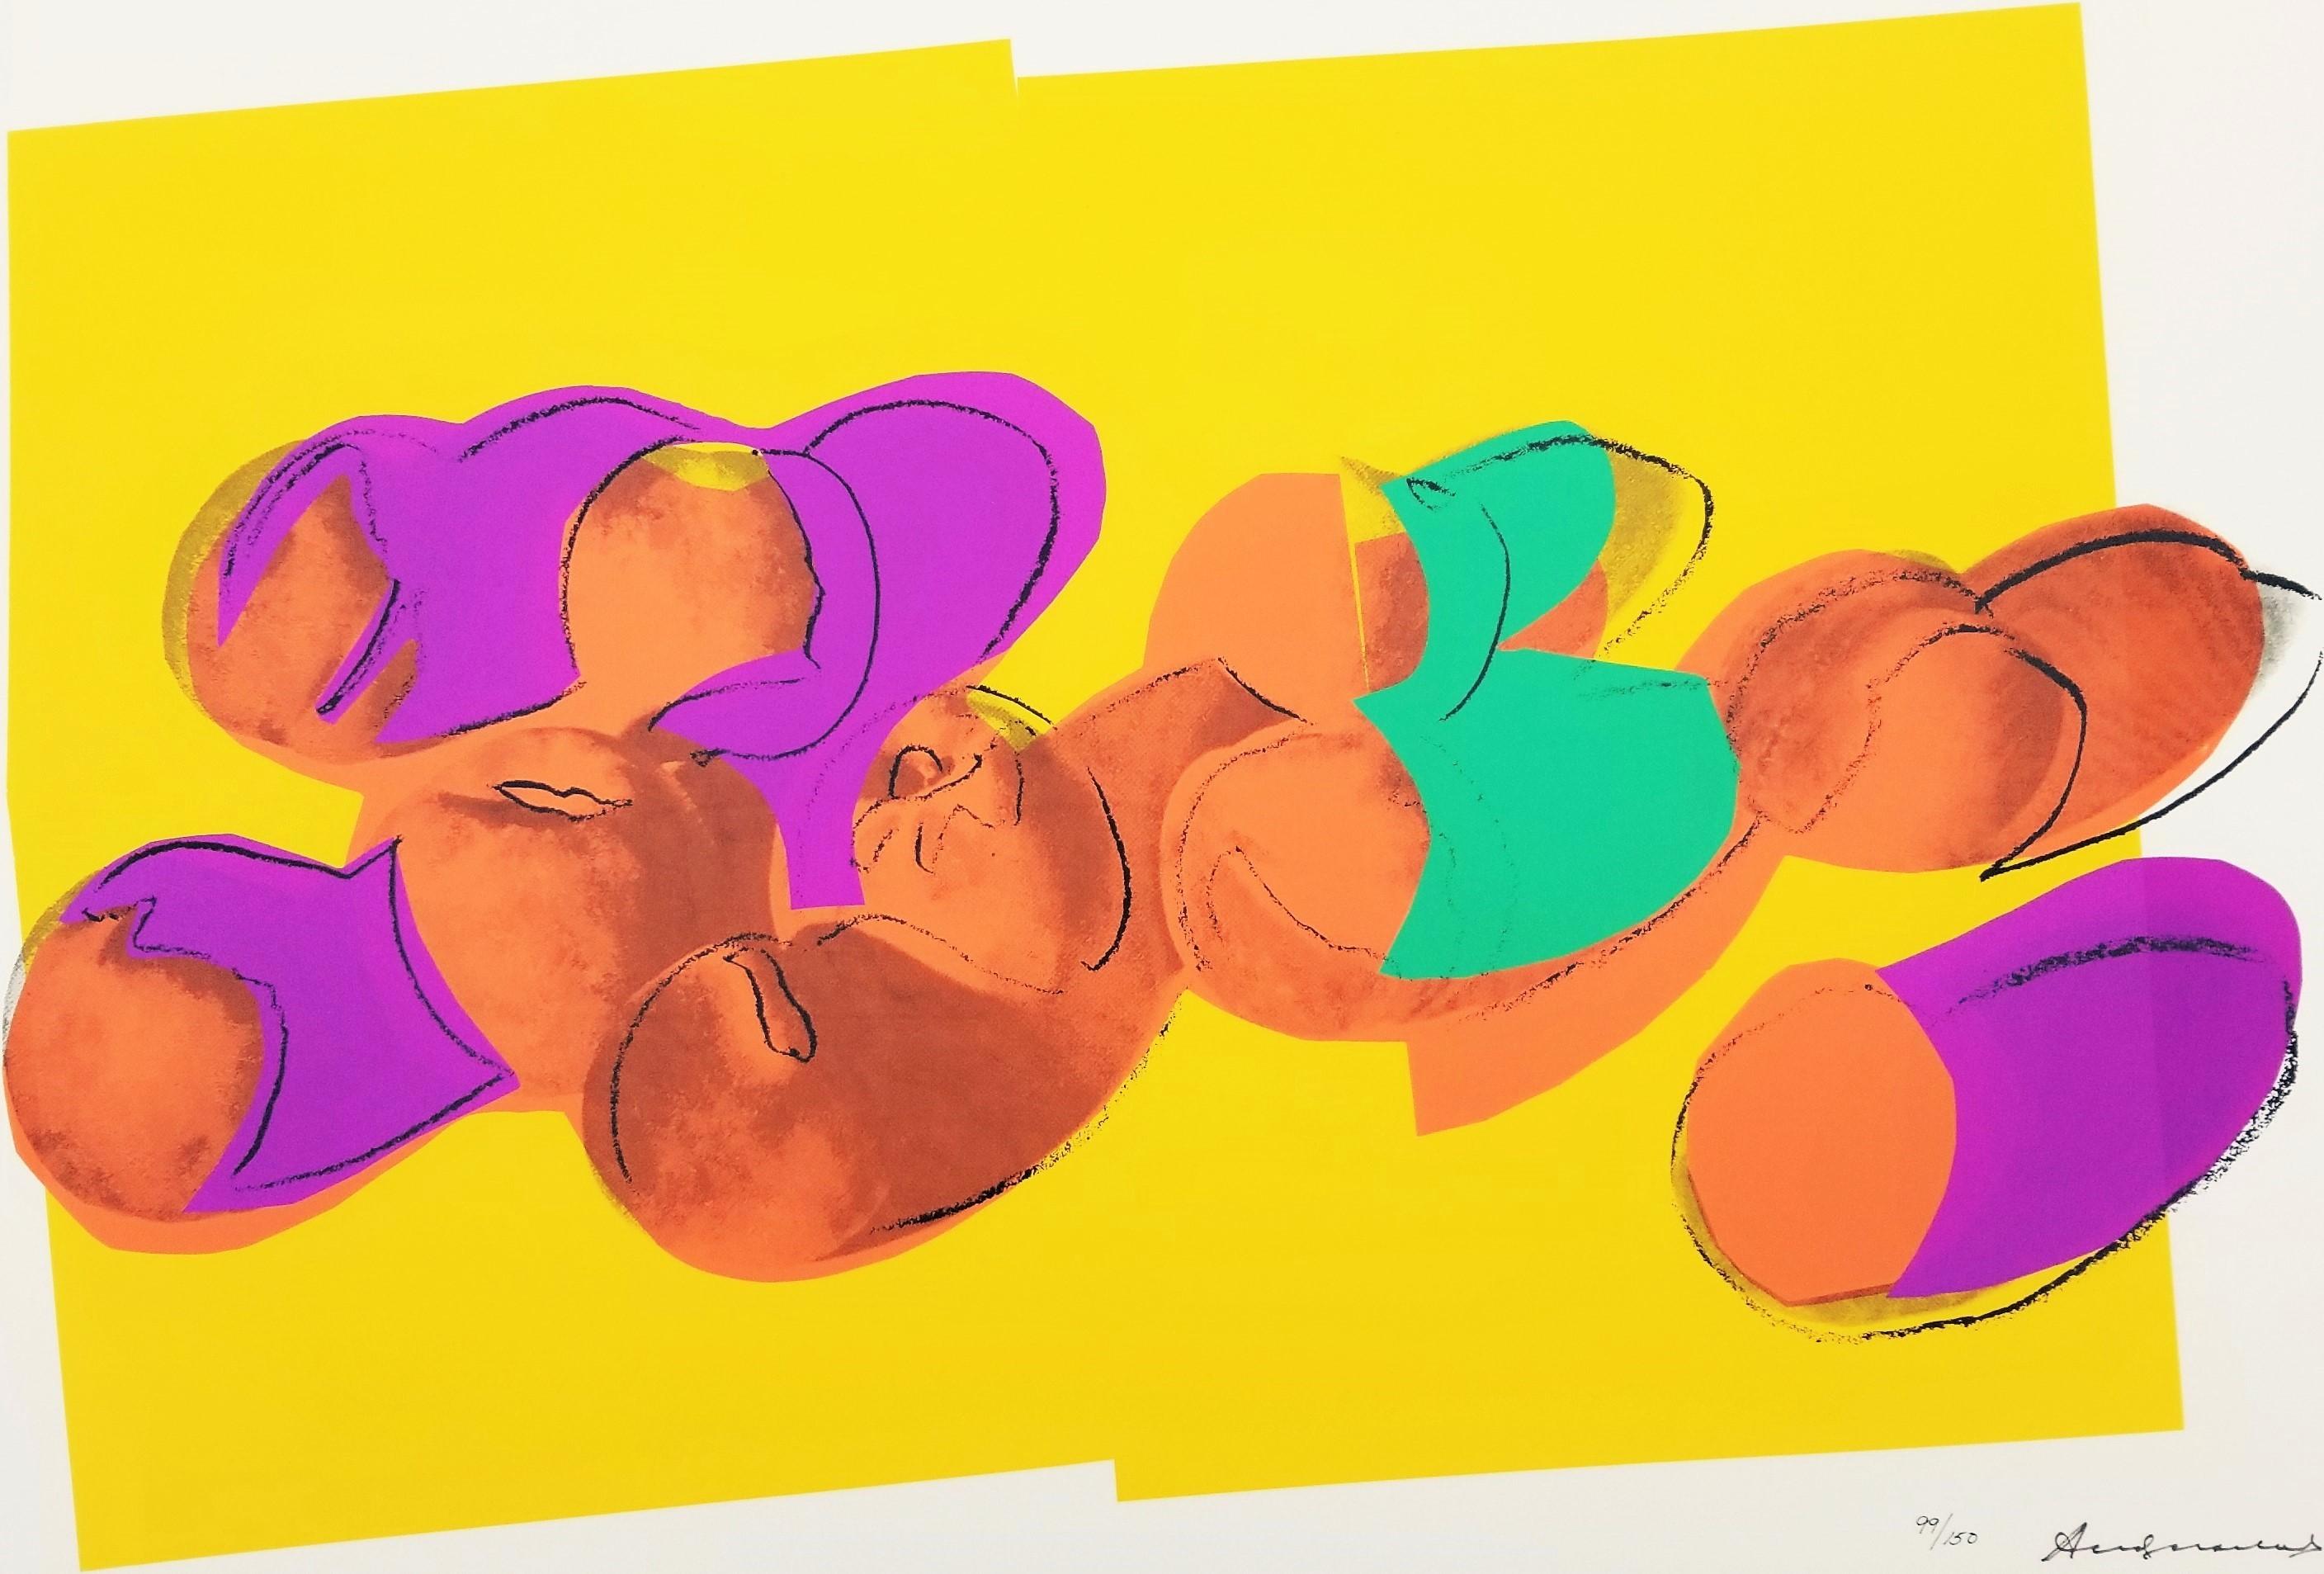 Künstler: Andy Warhol (Amerikaner, 1928-1987)
Titel: "Pfirsiche"
Portfolio: Weltraumfrüchte: Stillleben
*Signiert von Warhol mit Filzstift unten rechts
Jahr: 1979
Medium: Original-Siebdruck auf Lenox Museumskarton
Limitierte Auflage: 99/150, (es gab